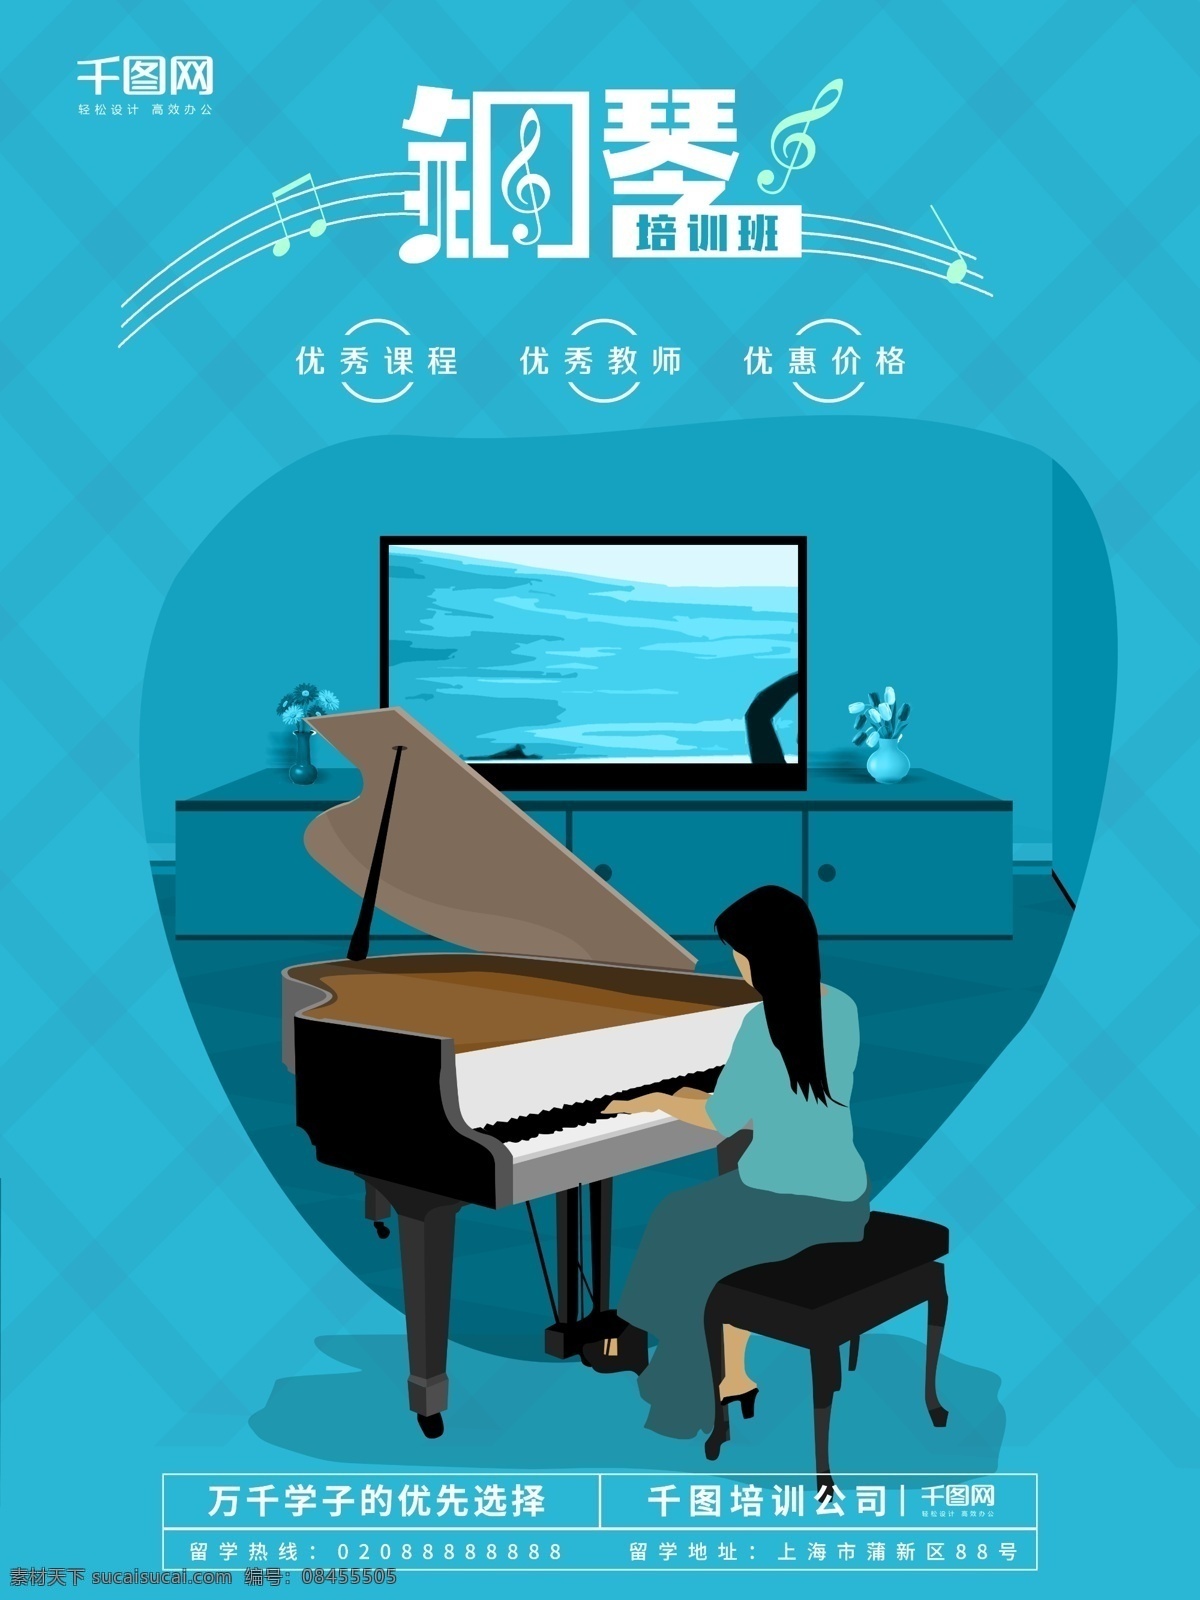 蓝色 简约 插画 钢琴 培训班 海报 教育 音乐 音符 学生 暑假 培训 弹琴 乐器 弹奏 奏乐 老师 假期